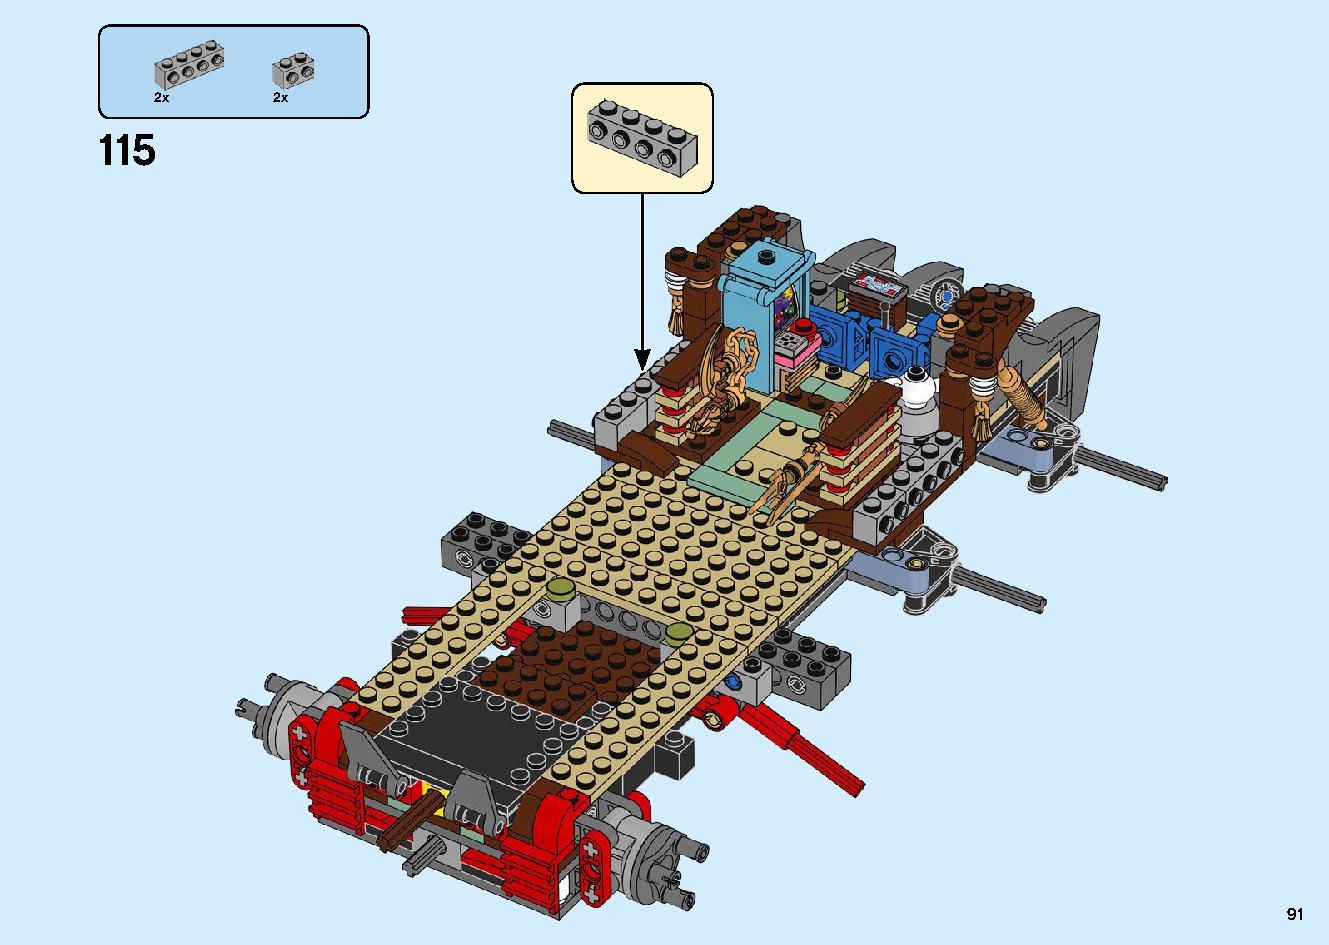 陸上戦艦バウンティ号 70677 レゴの商品情報 レゴの説明書・組立方法 91 page